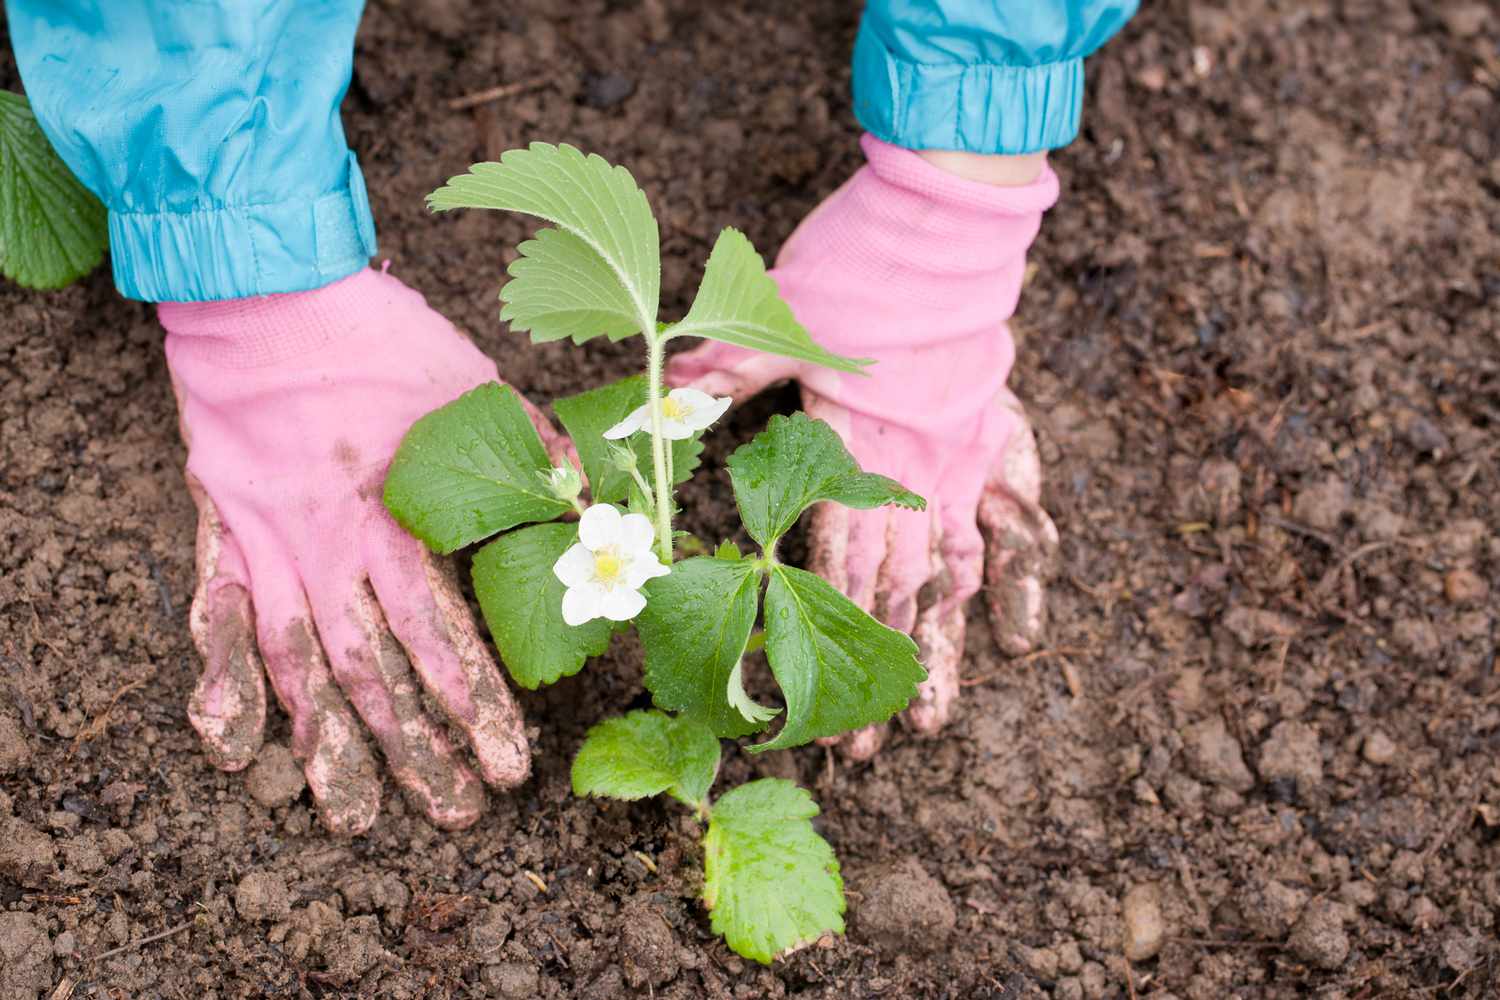 Jardinera con guantes de jardinería rosas planta fresa en flor en el suelo.